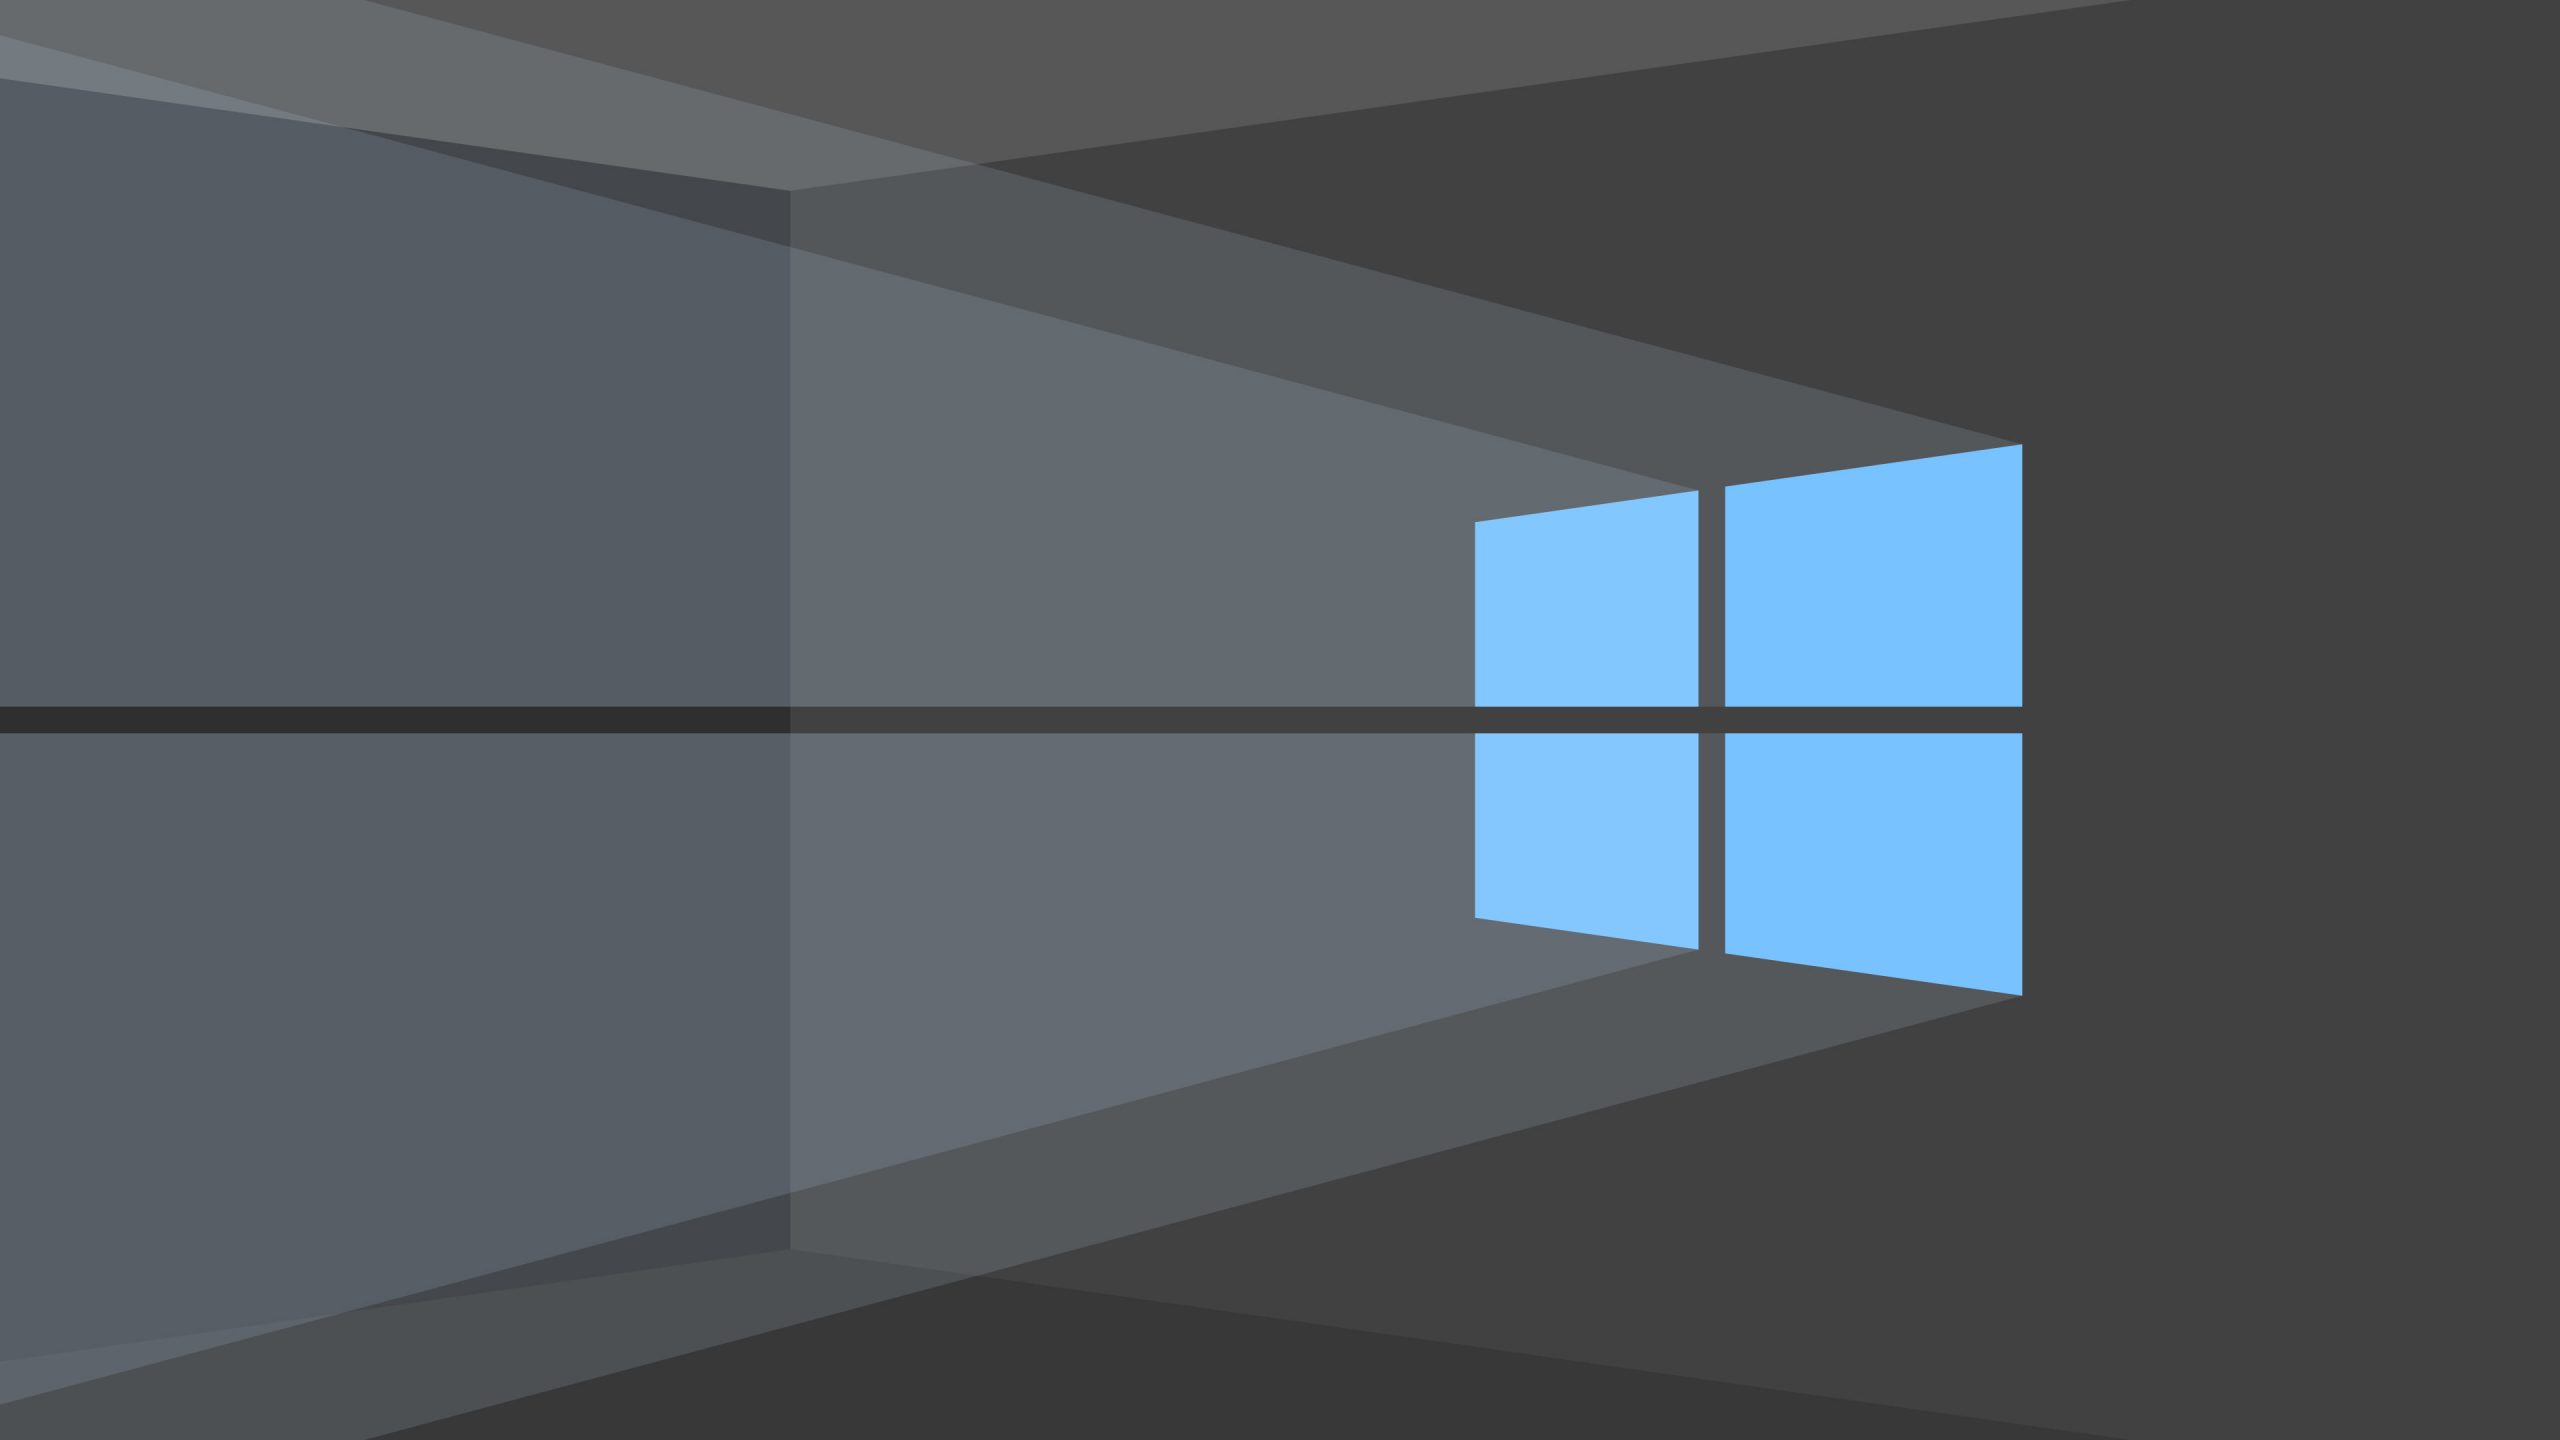 Windows 10 wallpaper, minimalism, minimalist, hd, 4k, computer, deviantart